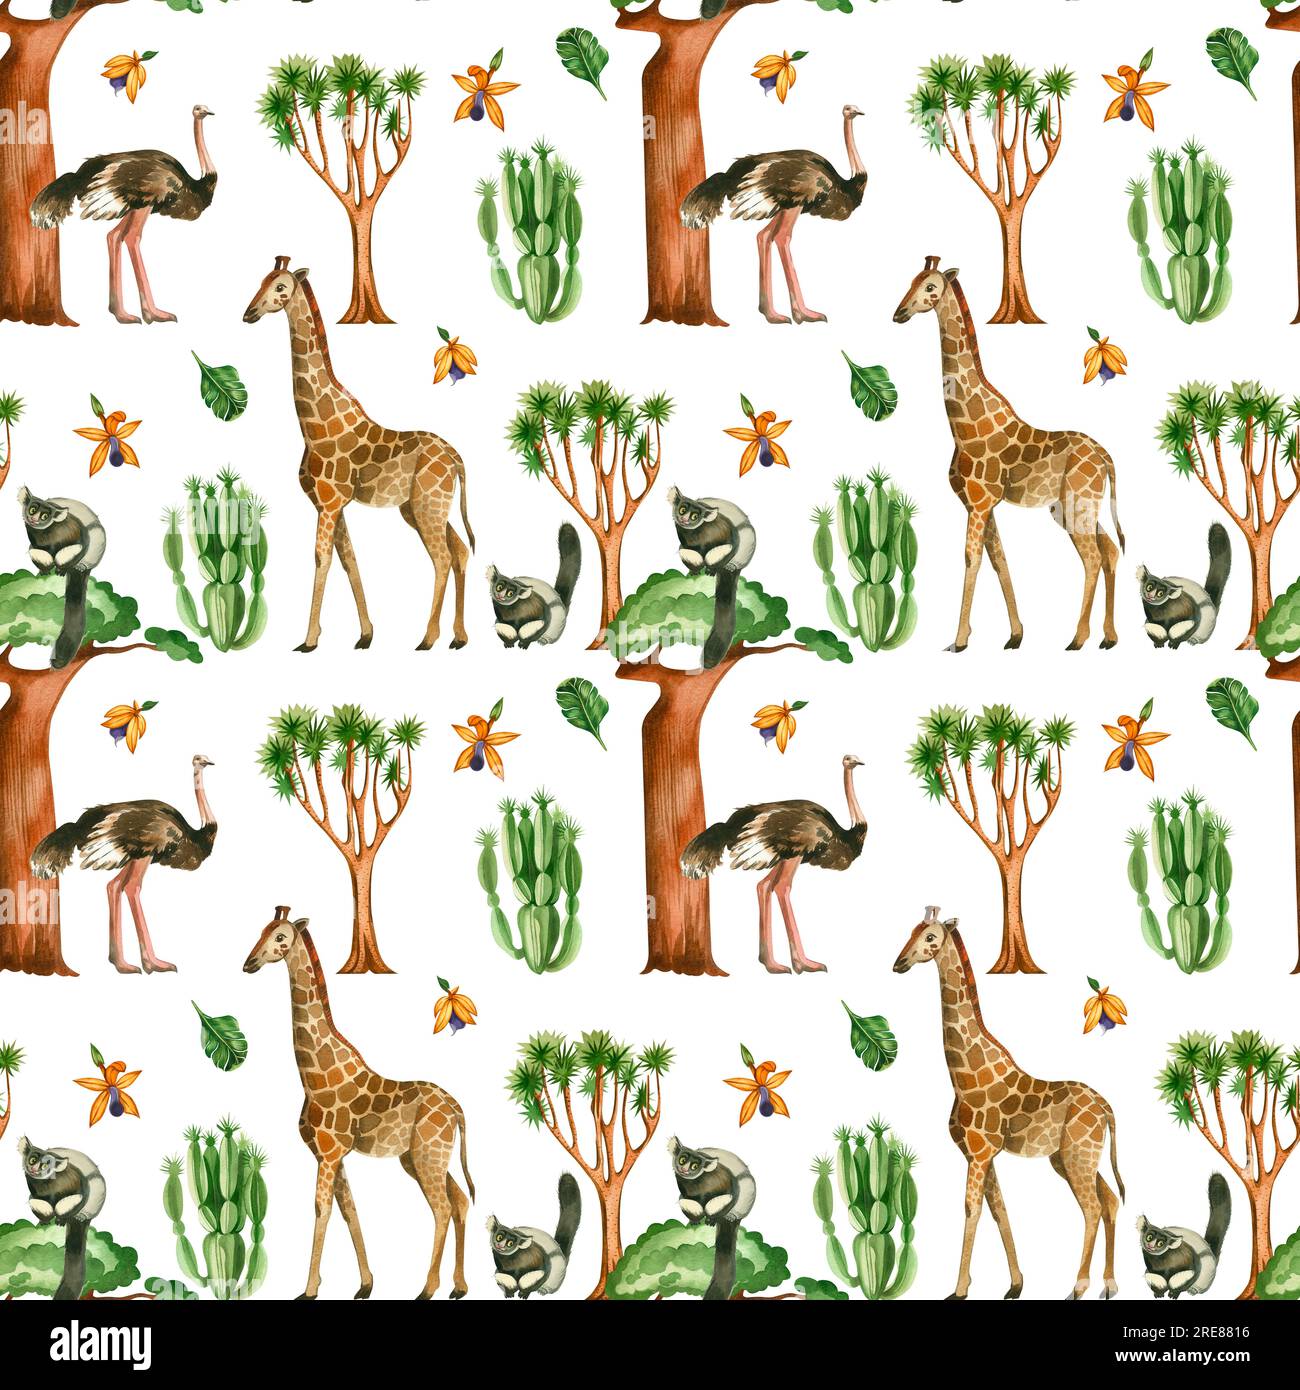 Motif sans couture sur un fond blanc. Girafe, autruche, singes, cactus, feuilles, les arbres de jungle de baobab sont peints avec des aquarelles. Banque D'Images